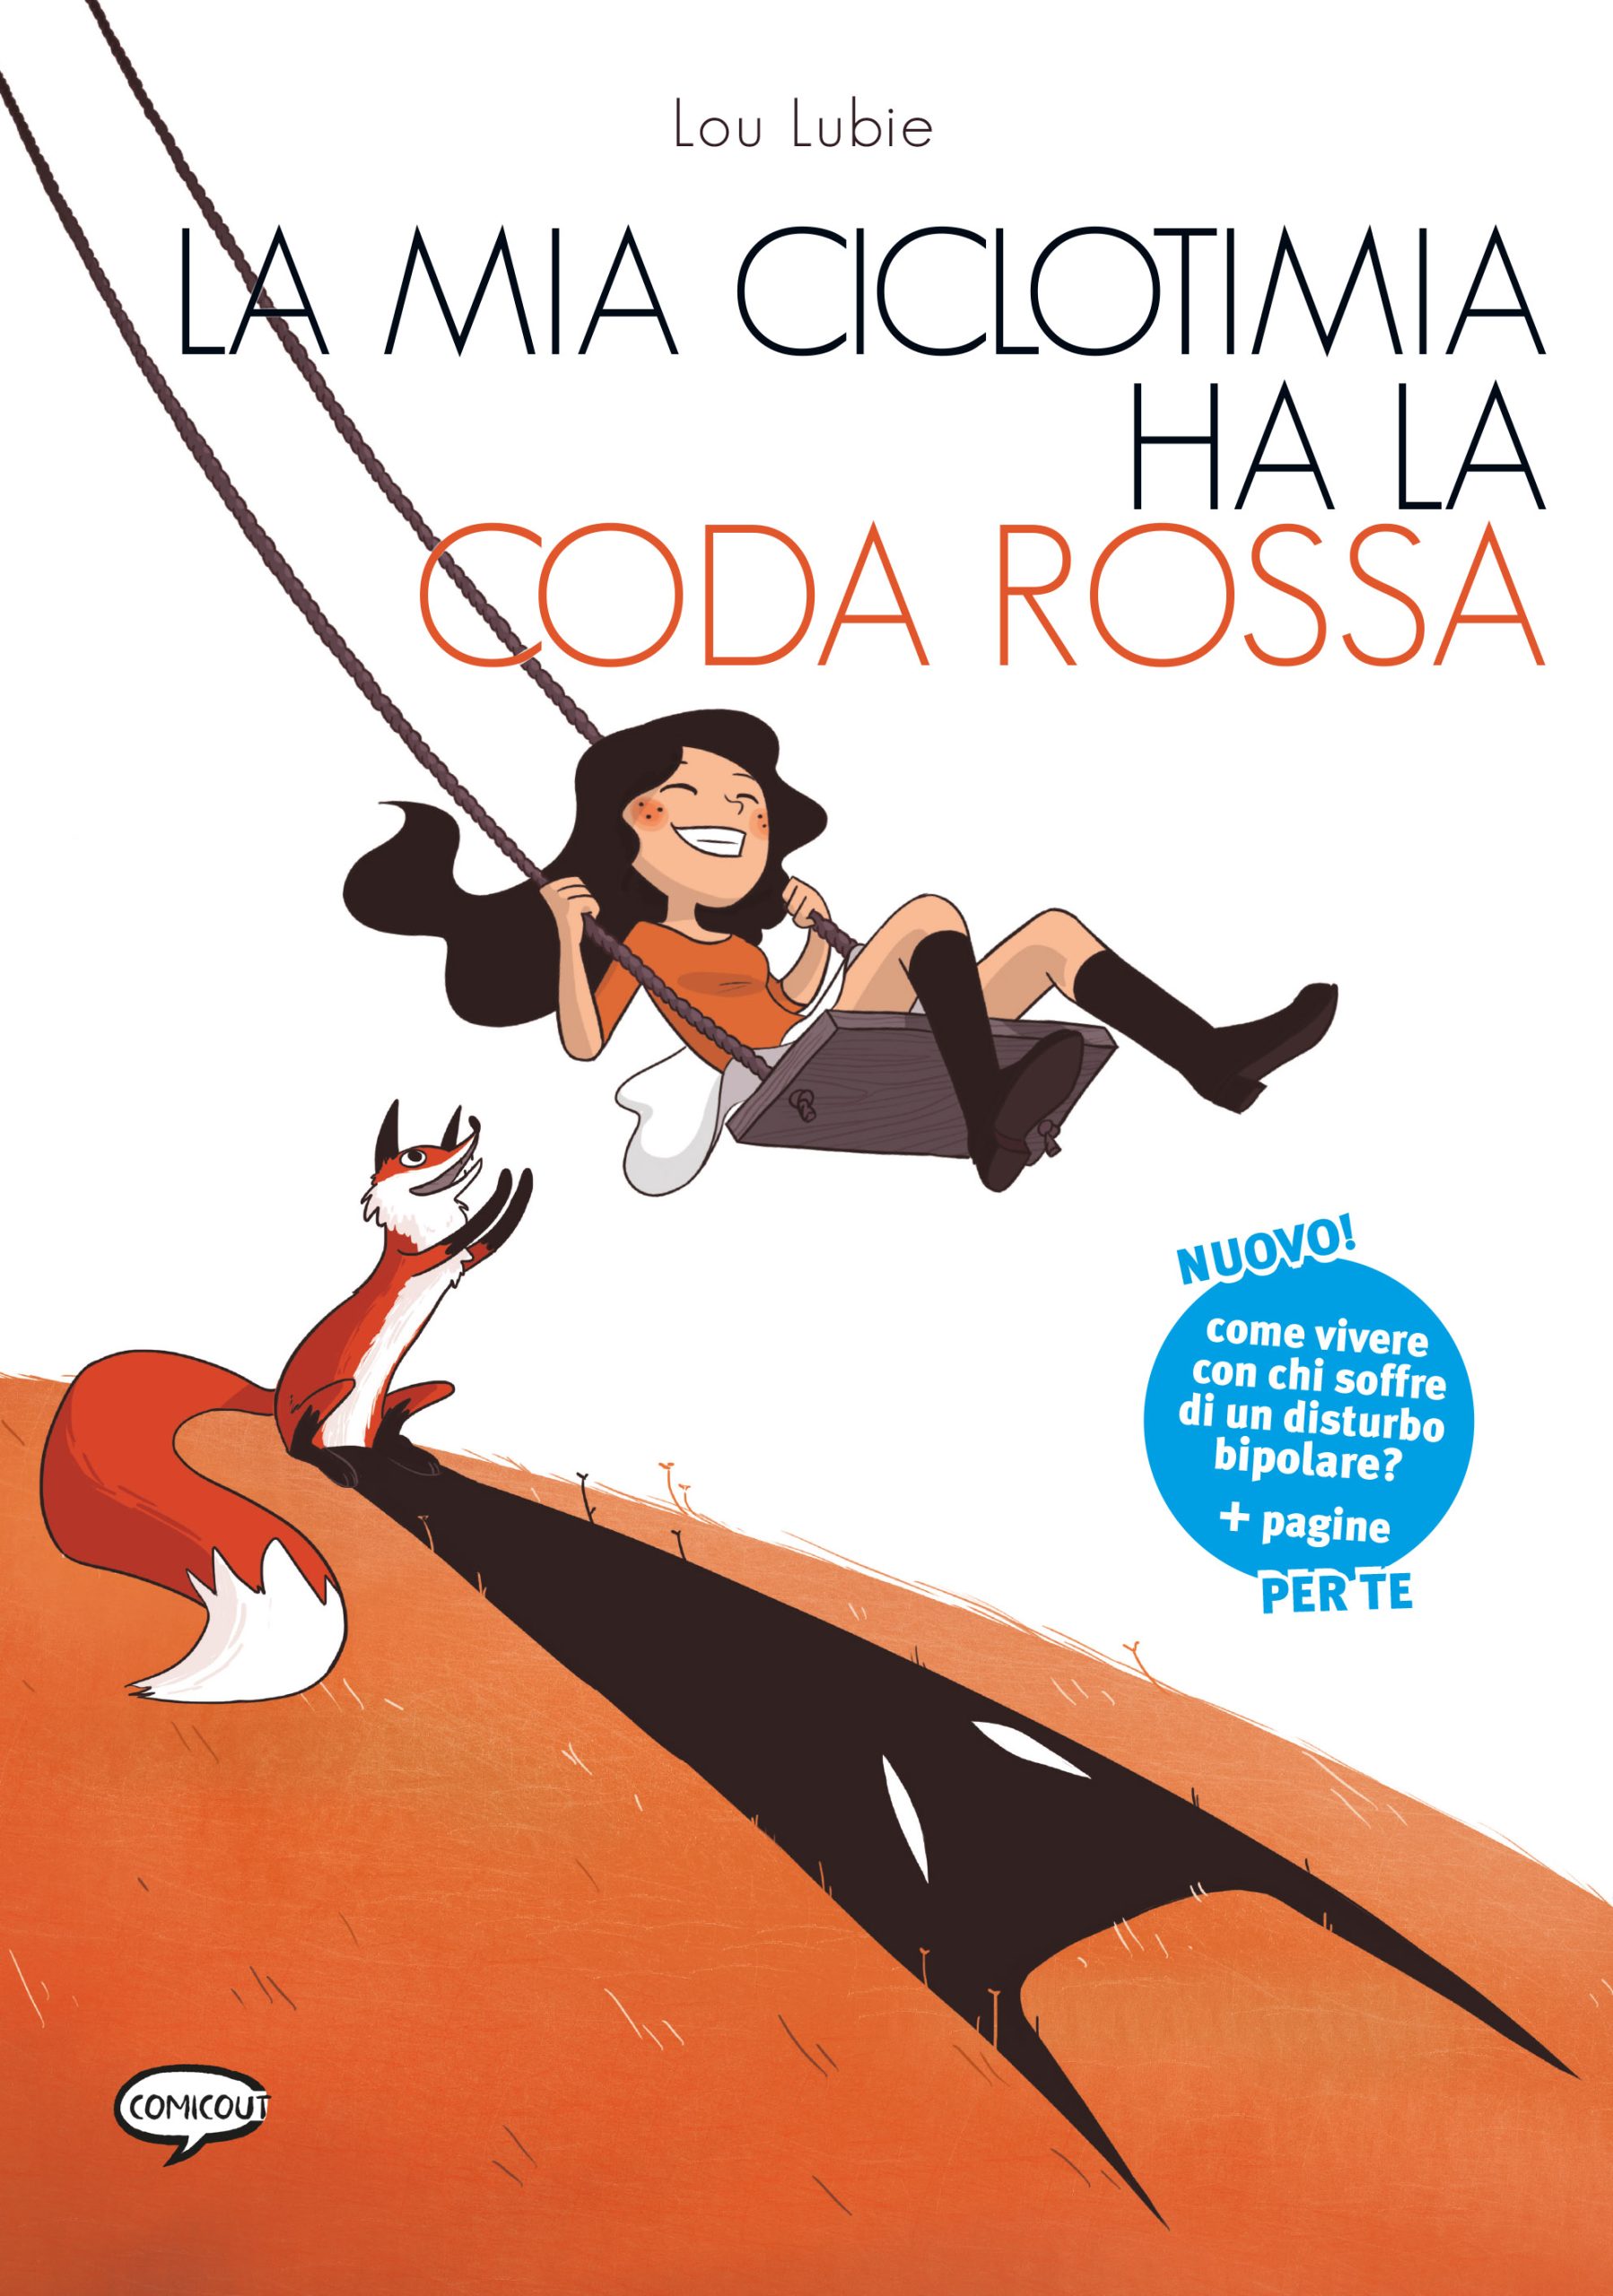 La mia ciclotimia ha la coda rossa (Hardcover, italiano language, Comicout)